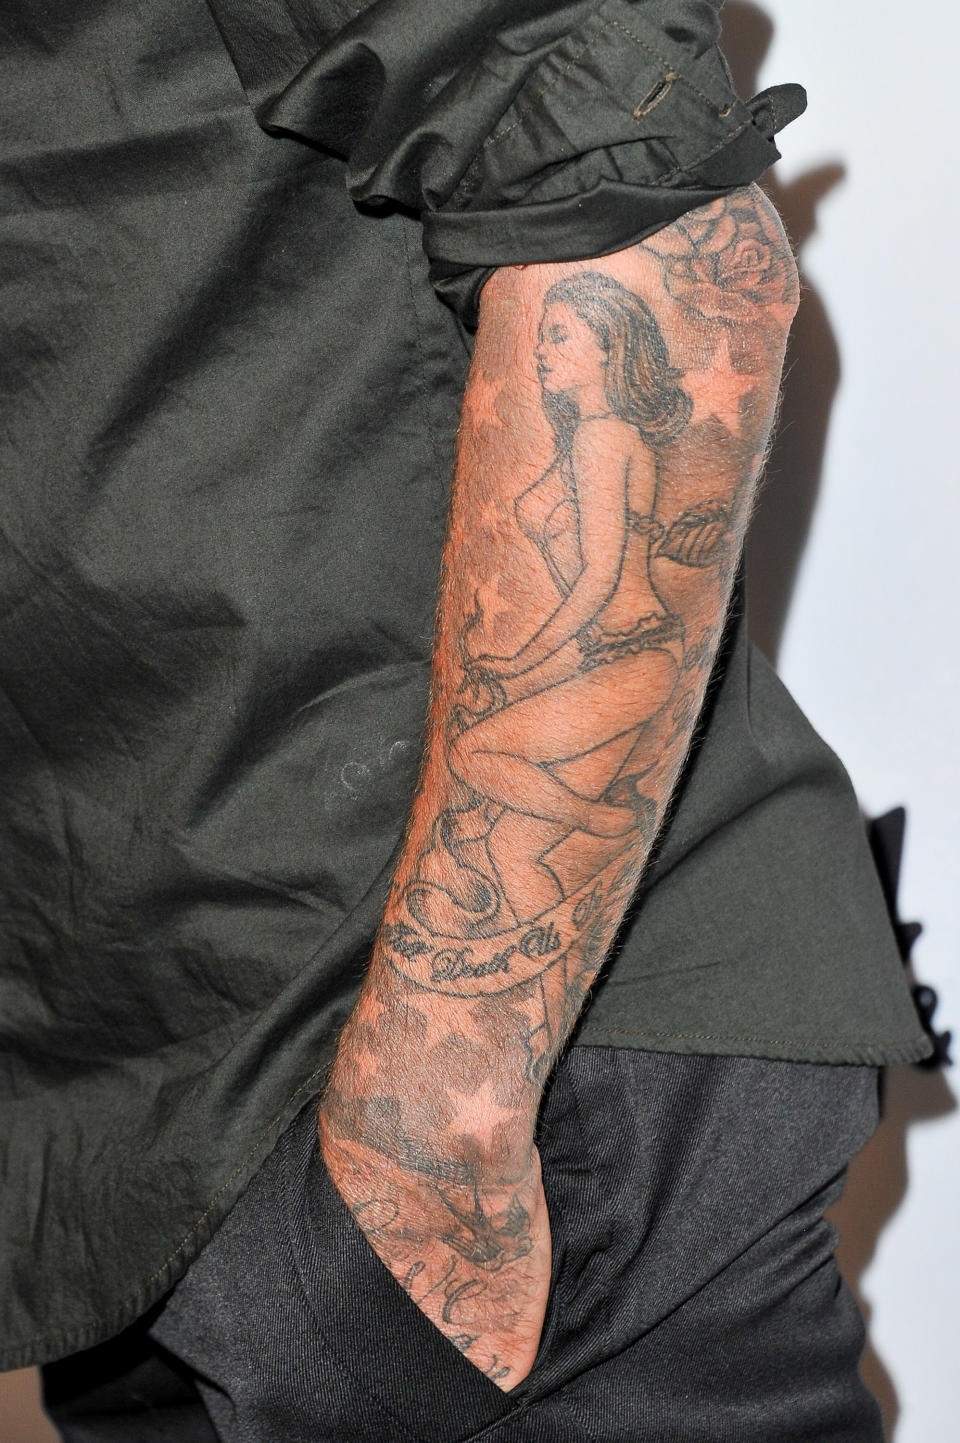 David Beckham et son tatouage "Victoria Beckham en lingerie"